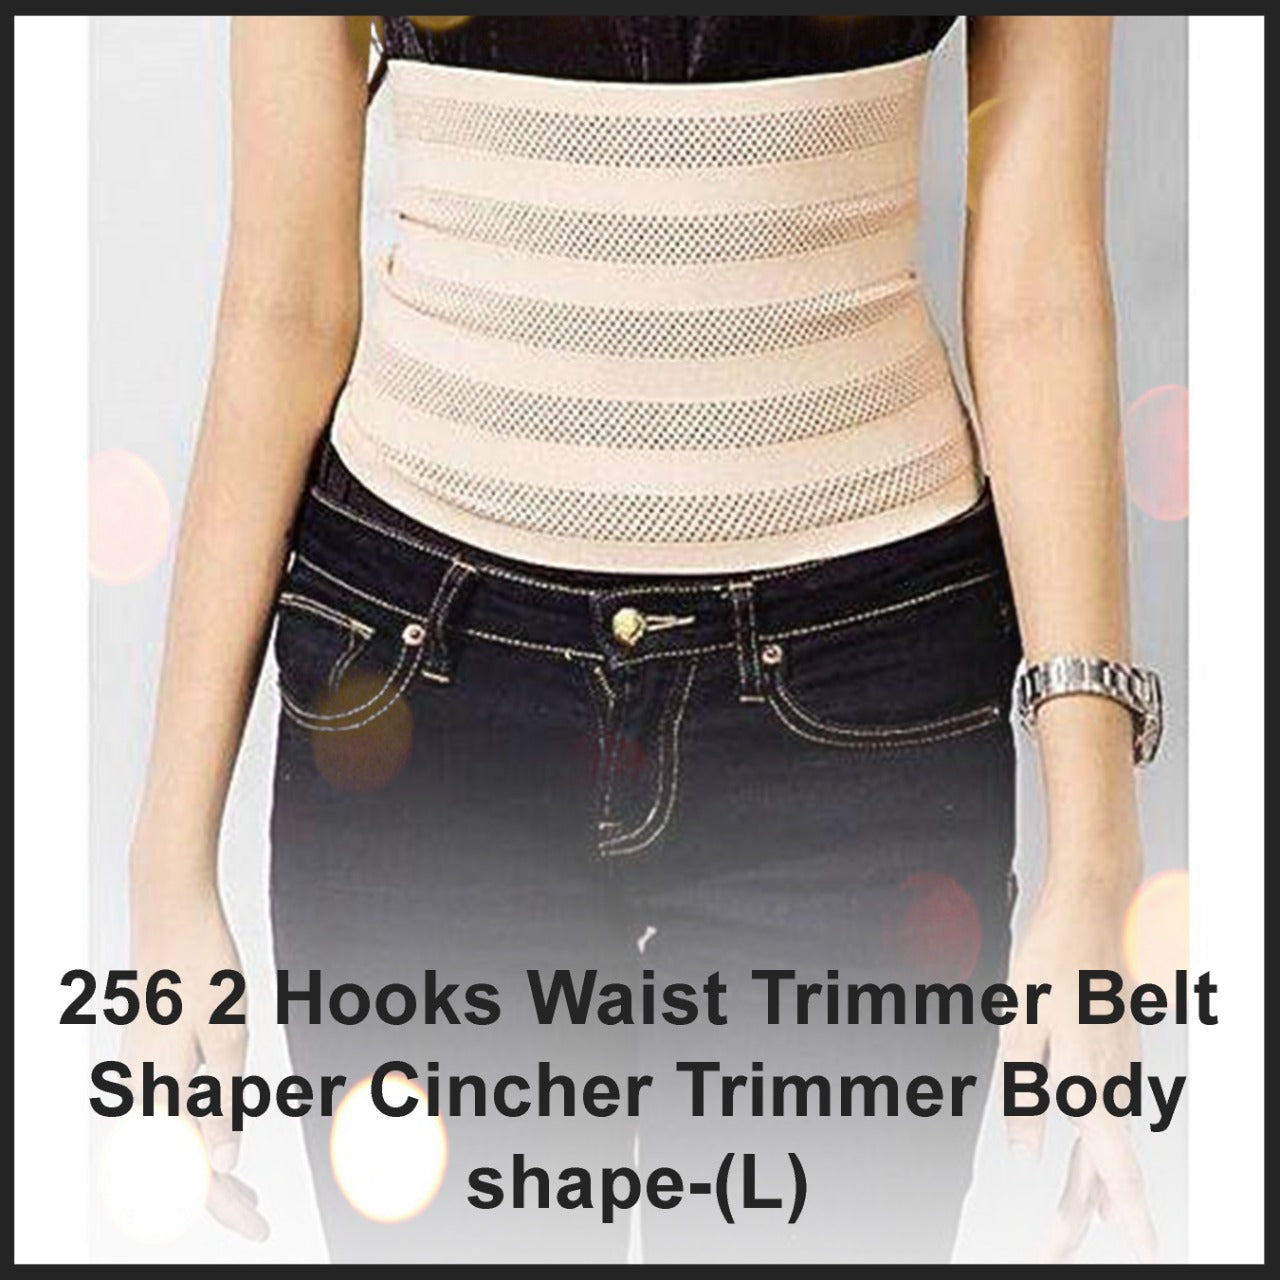 256 2 Hooks Waist Trimmer Belt Shaper Cincher Trimmer Body shape - (L) Dukandaily